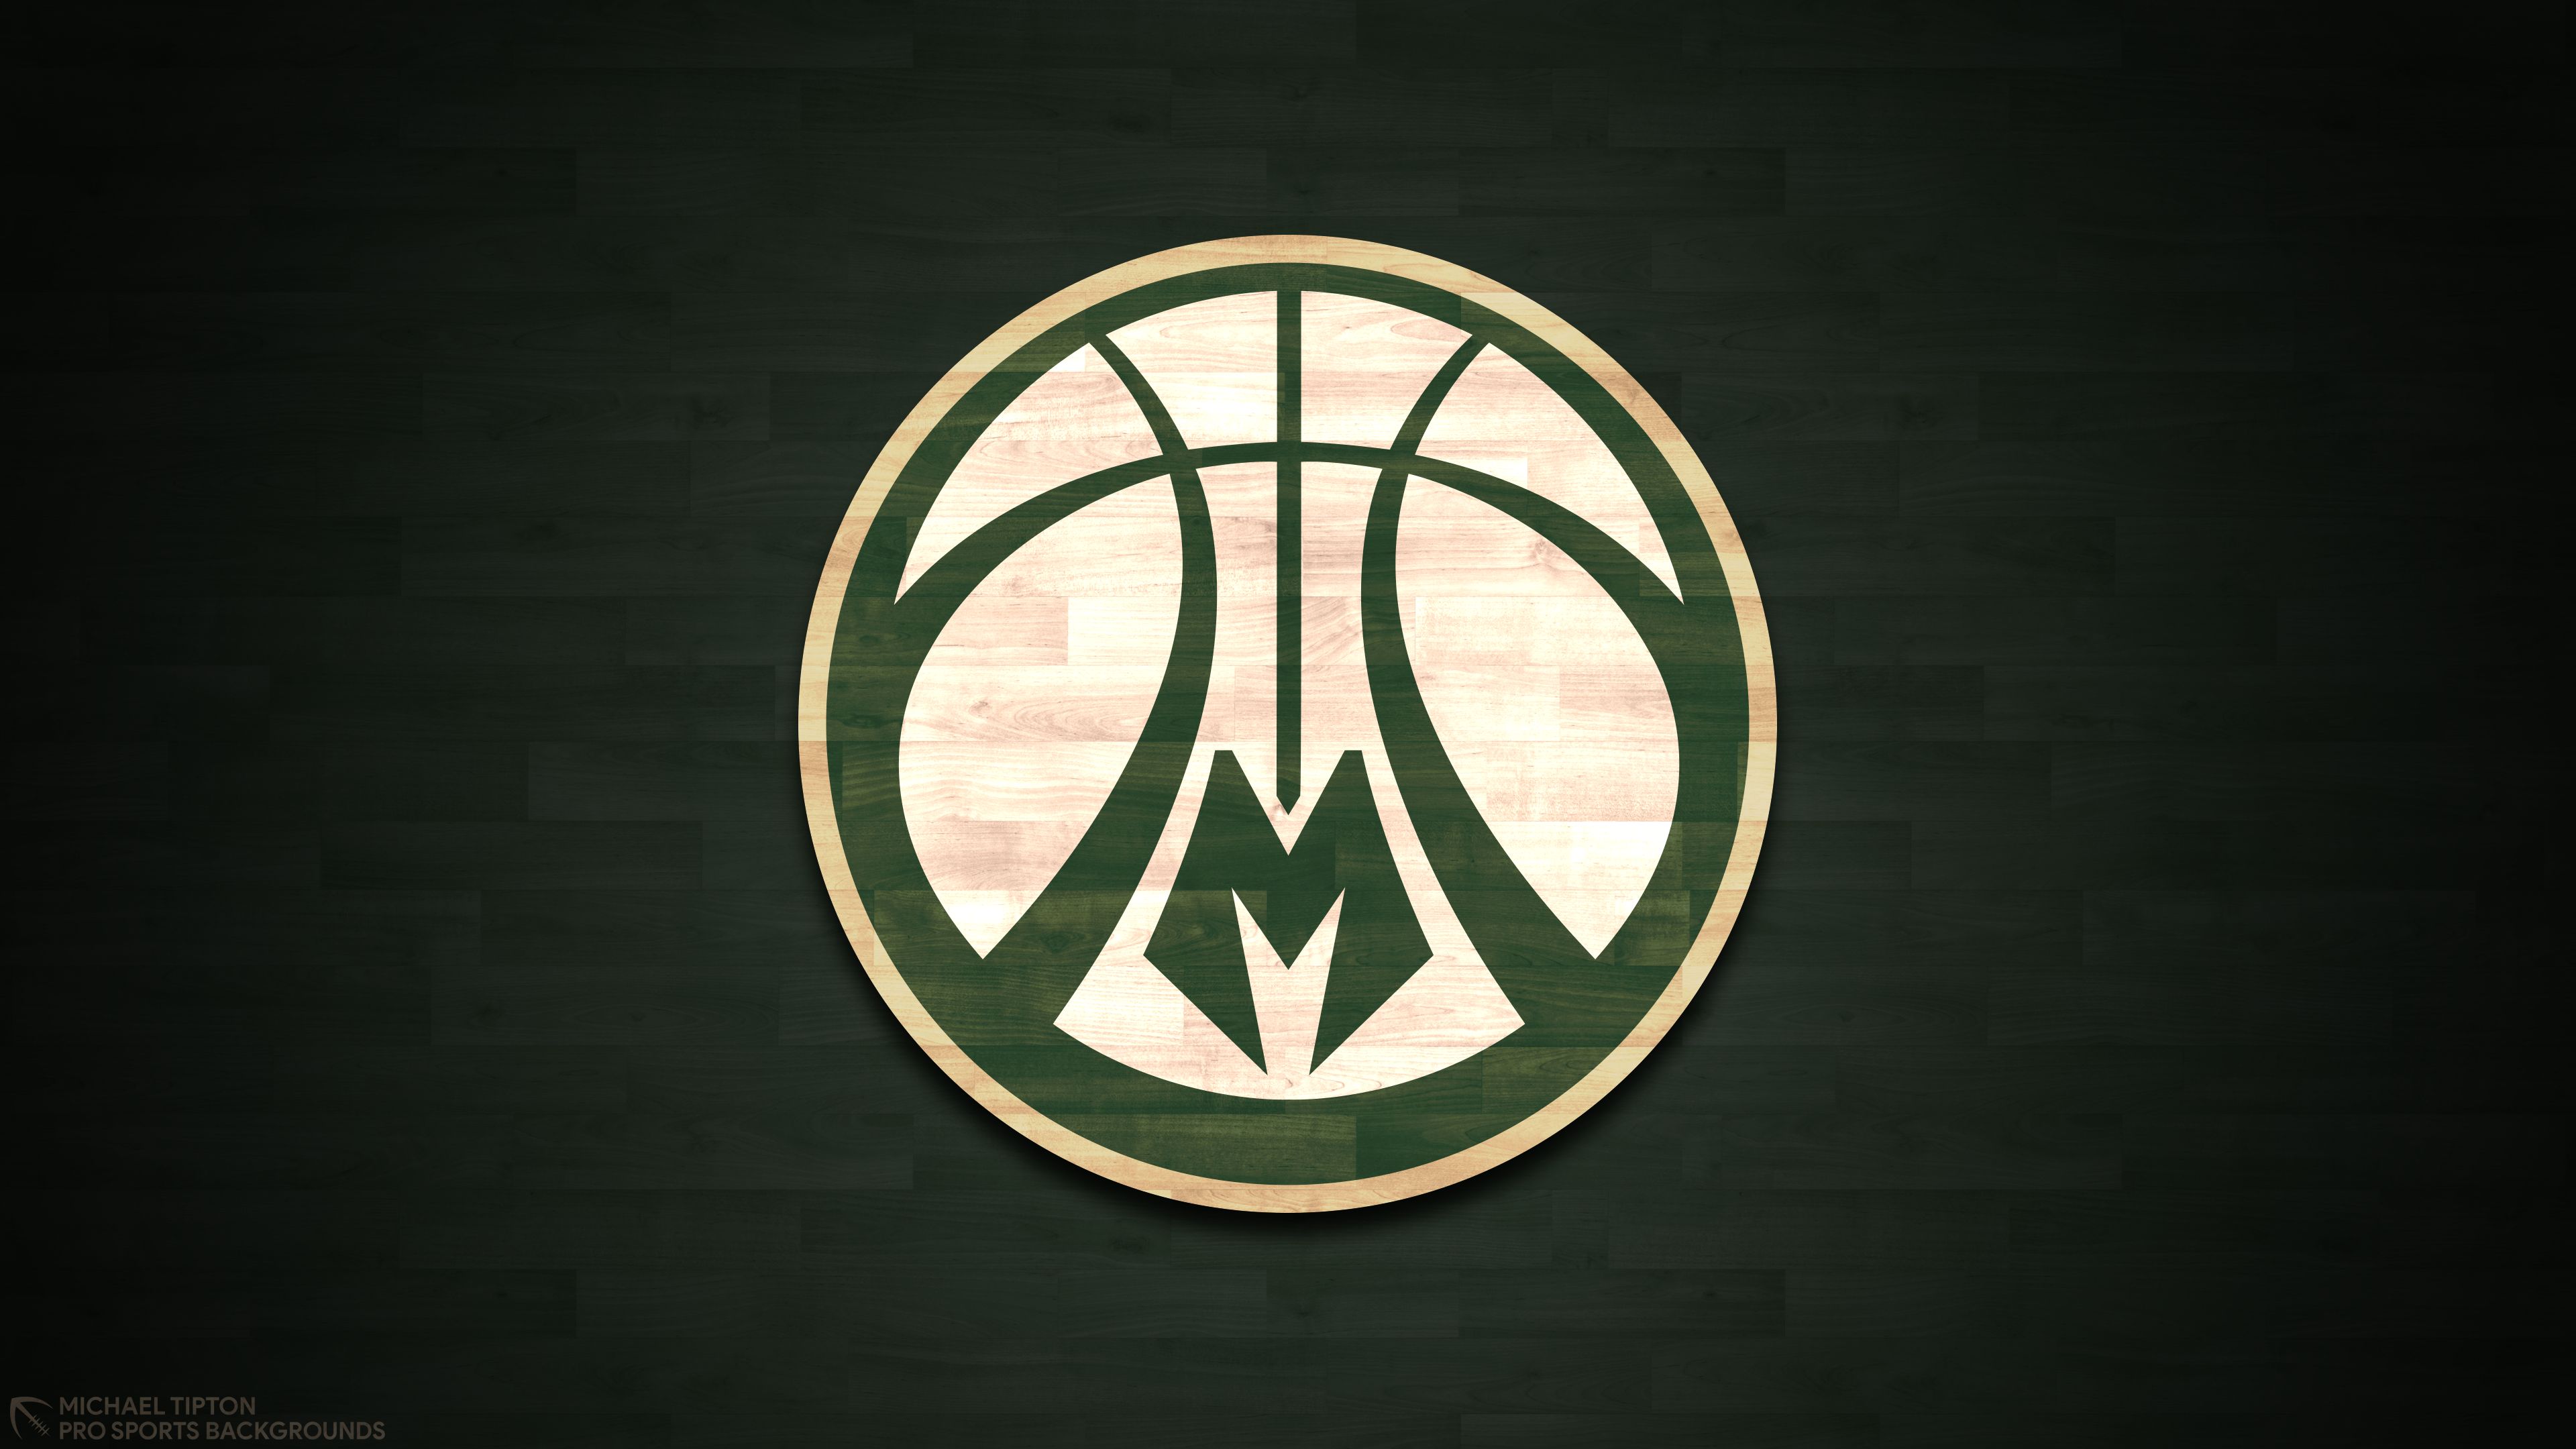 nba basketball logos wallpaper